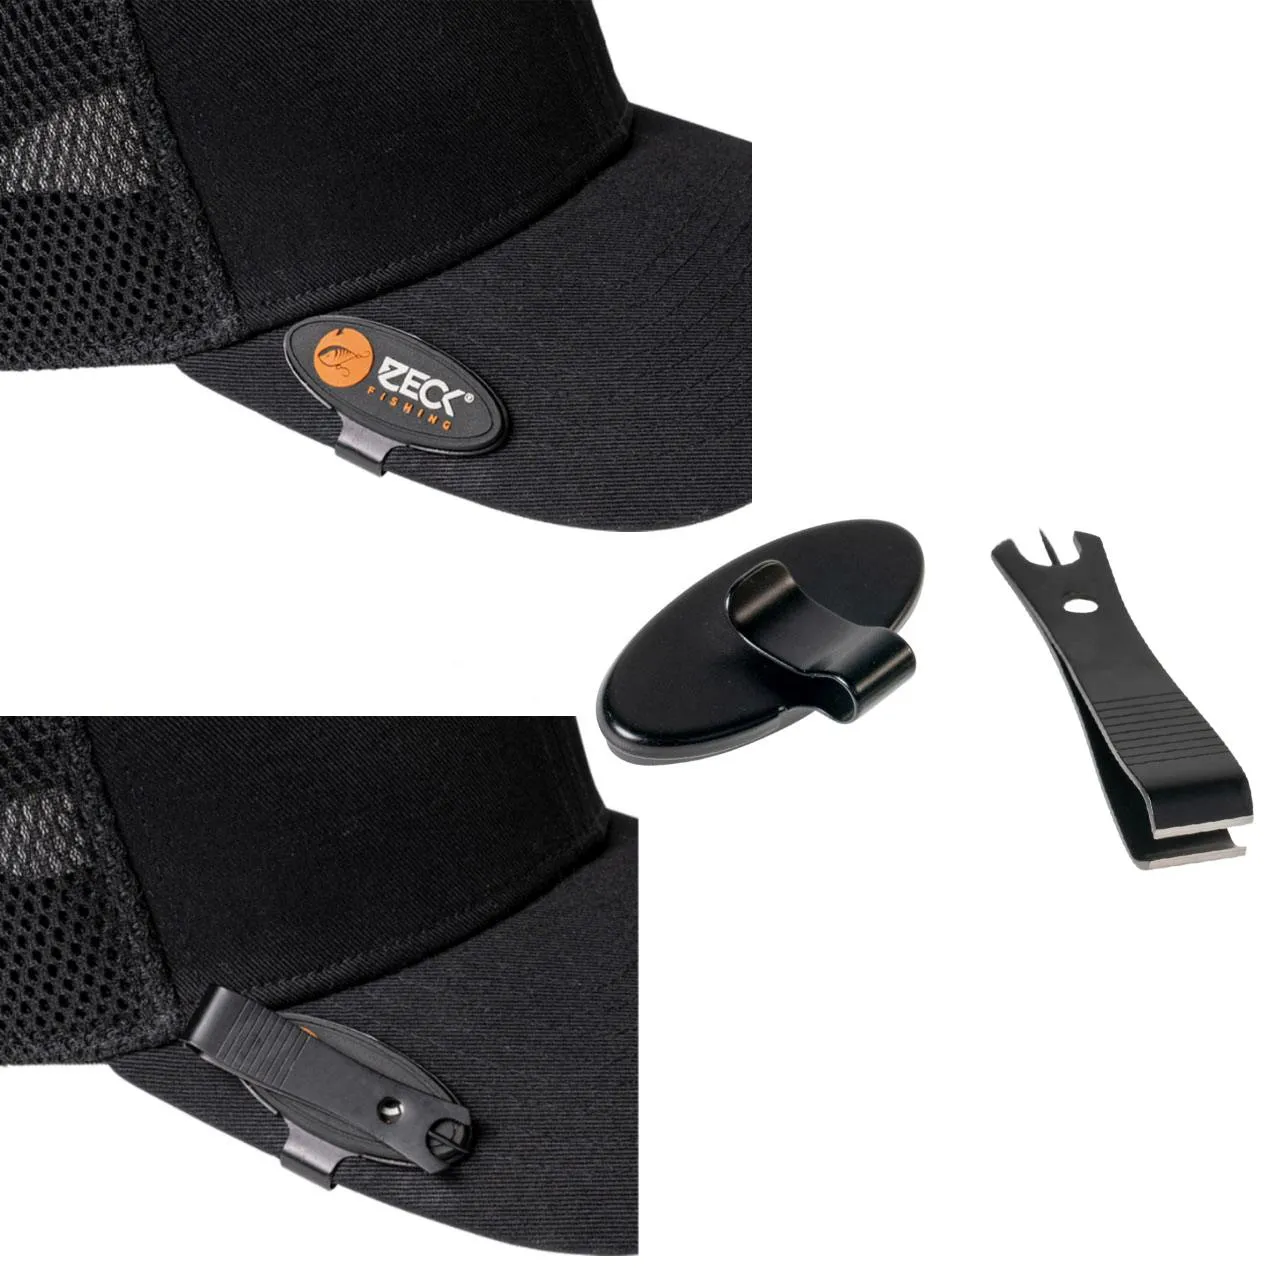 Zeck magnetna grickalica za šešir - Inovativni alat za brzo sečenje strune s magnetnim kačenjem na kačket